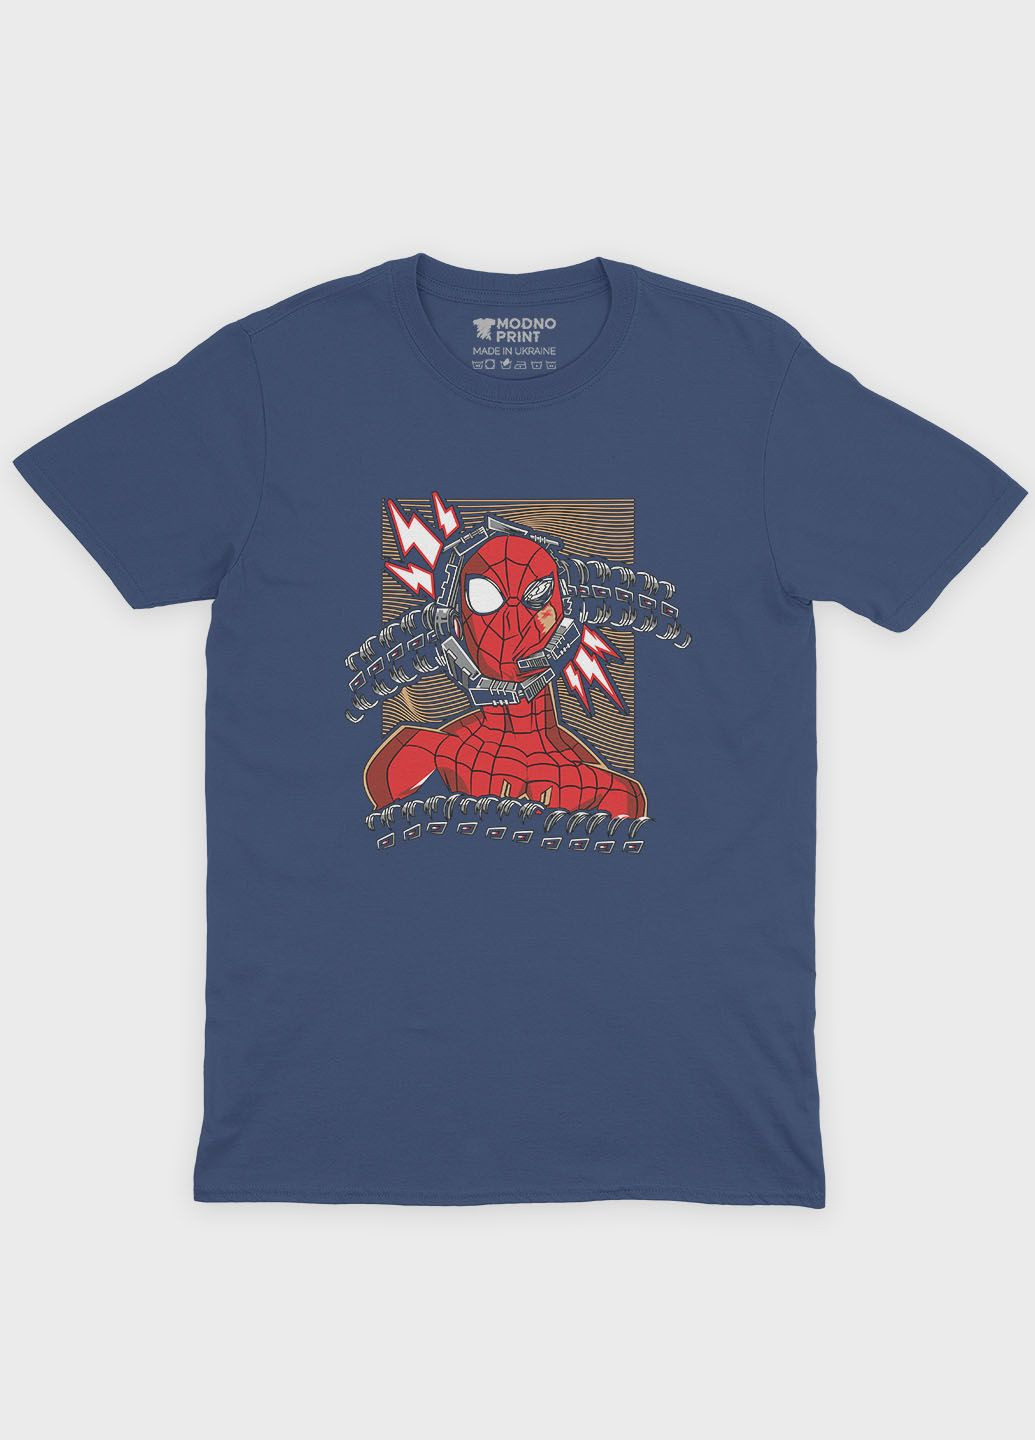 Темно-синя демісезонна футболка для хлопчика з принтом супергероя - людина-павук (ts001-1-nav-006-014-013-b) Modno